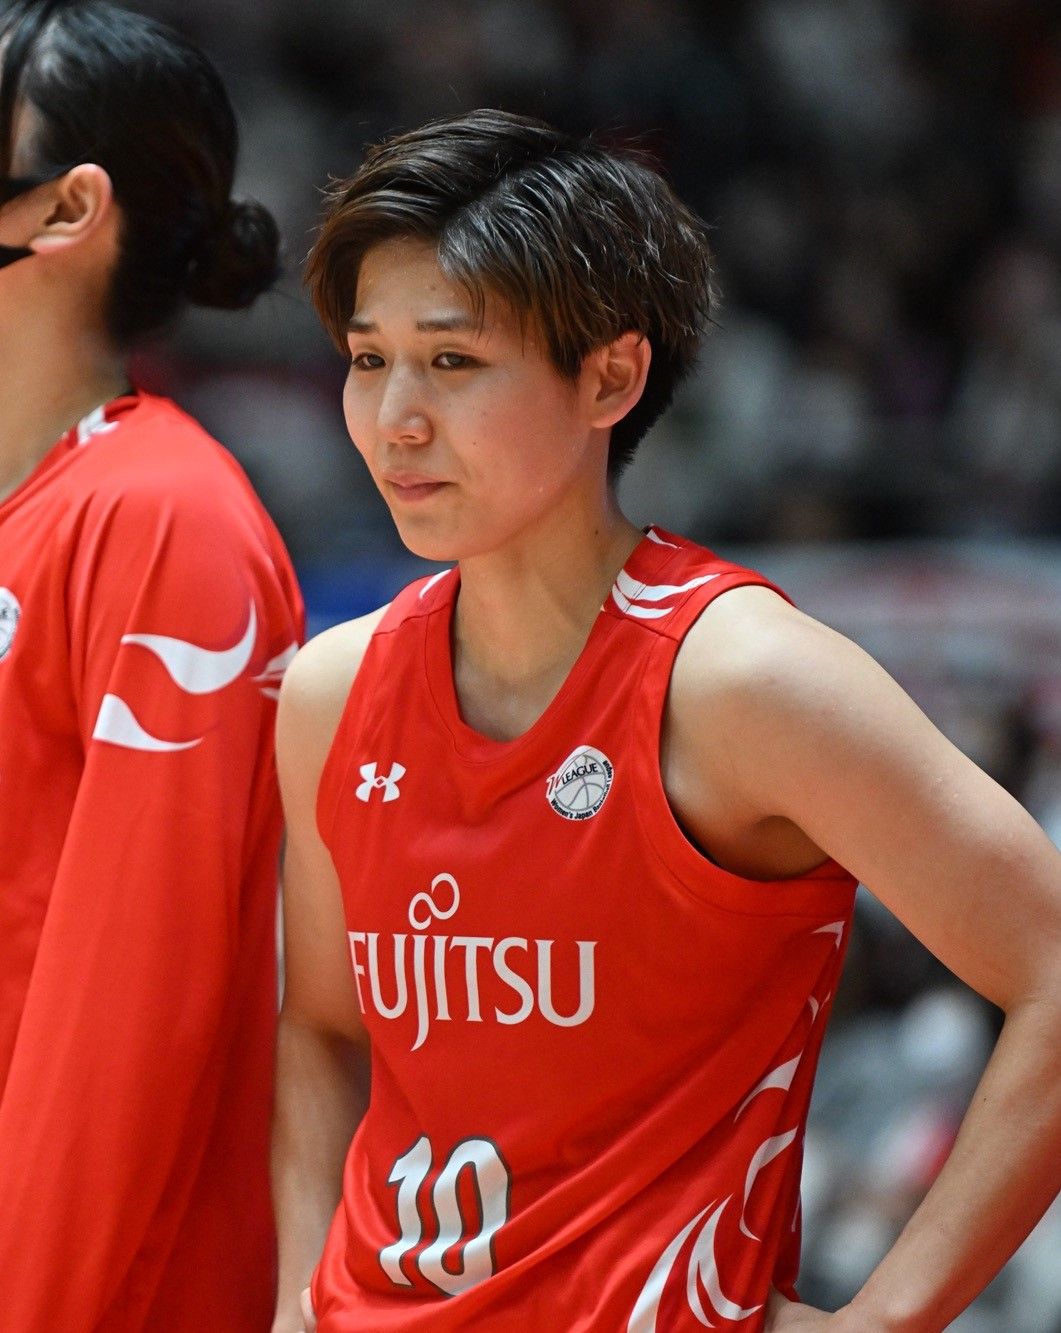 「このメンバーでできるのもラスト」WNBA挑戦の富士通・町田瑠唯 14年ぶり優勝ならず表彰式で涙 